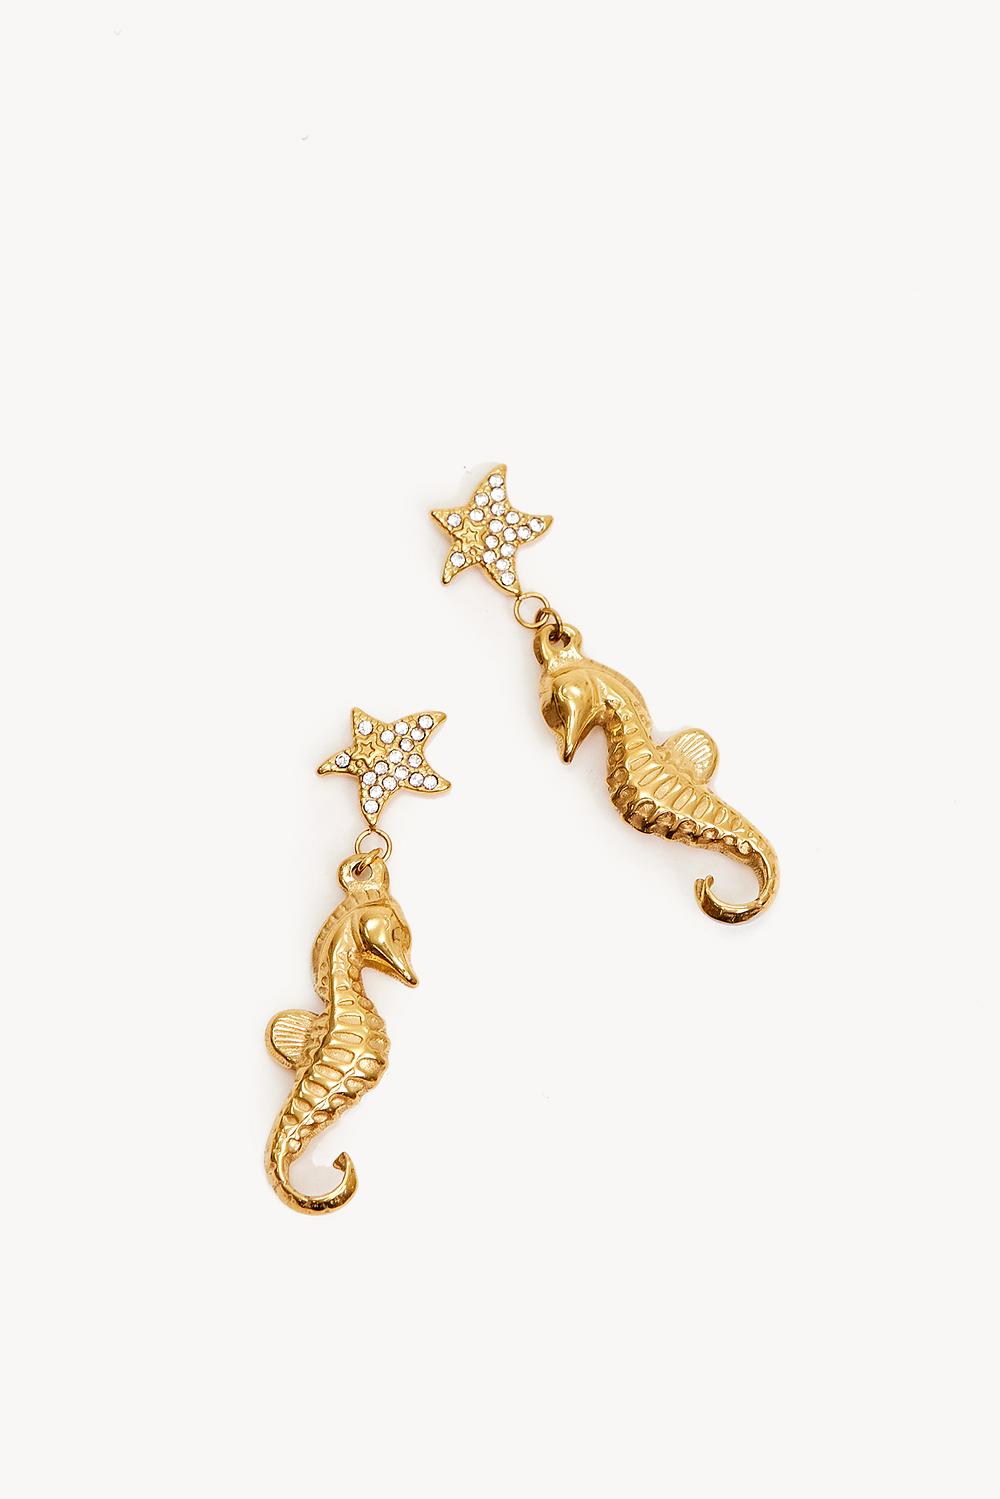 Golden seahorse earrings